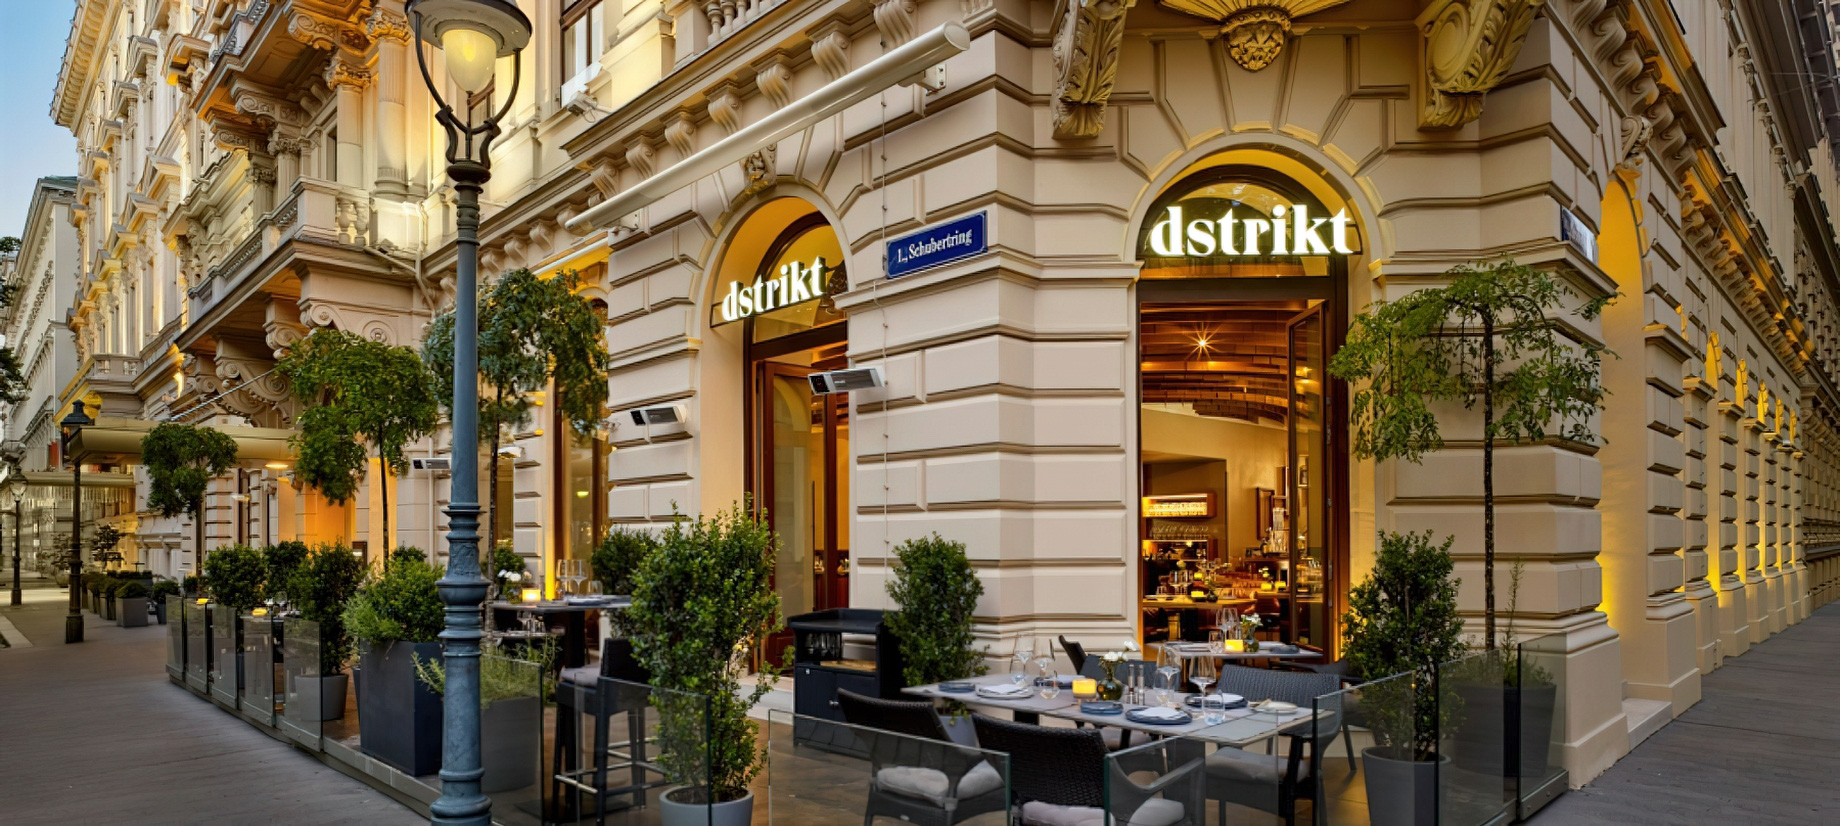 The Ritz-Carlton, Vienna Hotel – Vienna, Austria – Dstrikt Steakhouse Exterior